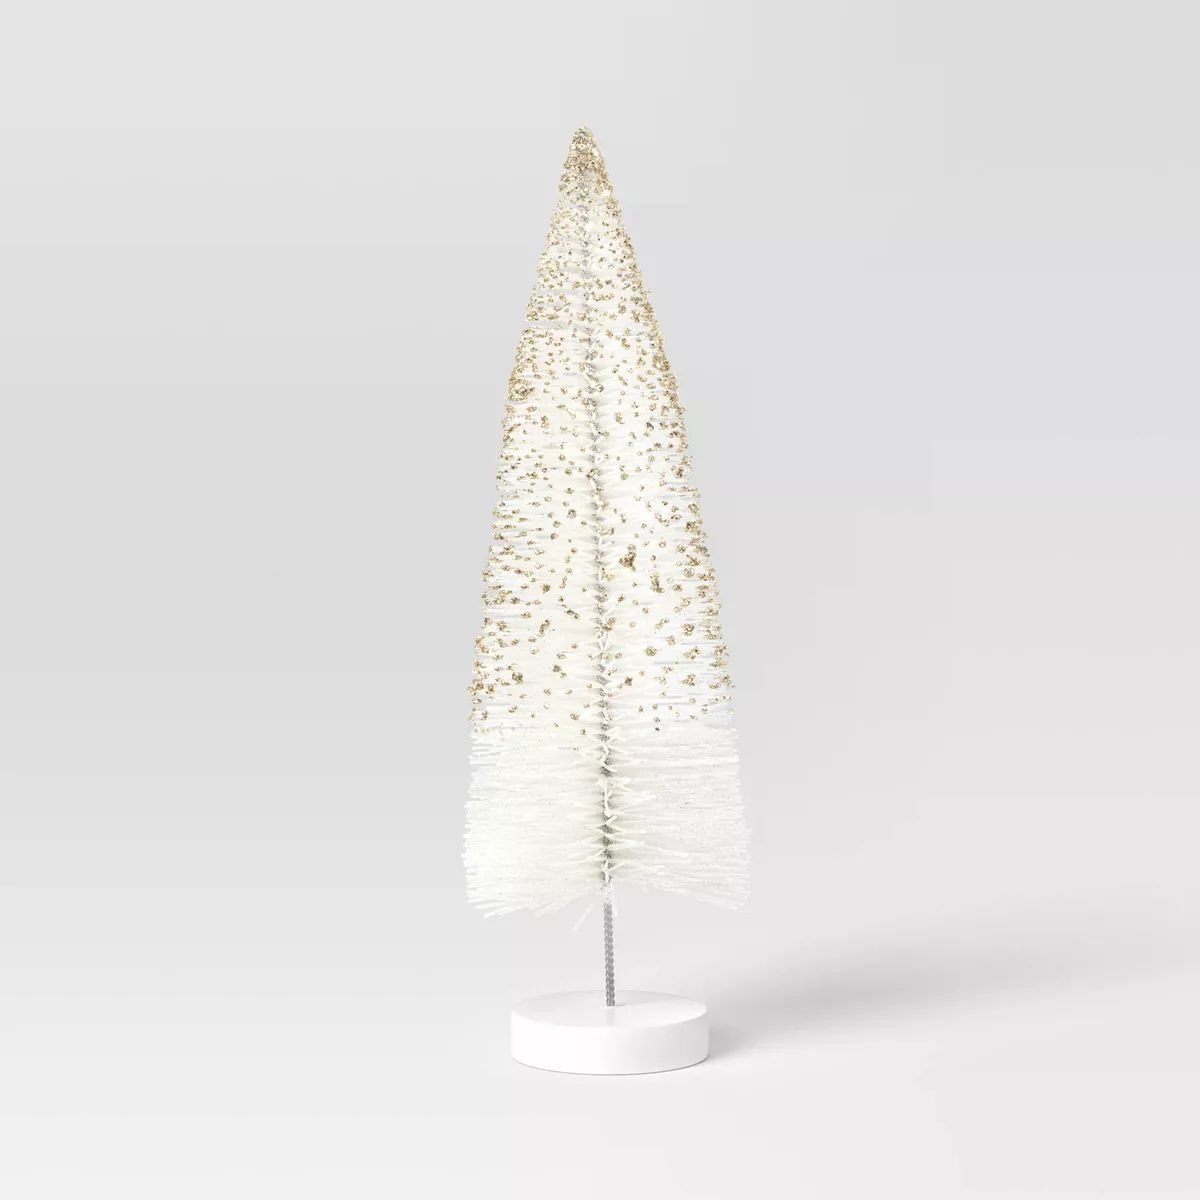 12" Glittered Sisal Christmas Bottle Brush Tree - Wondershop™ White | Target